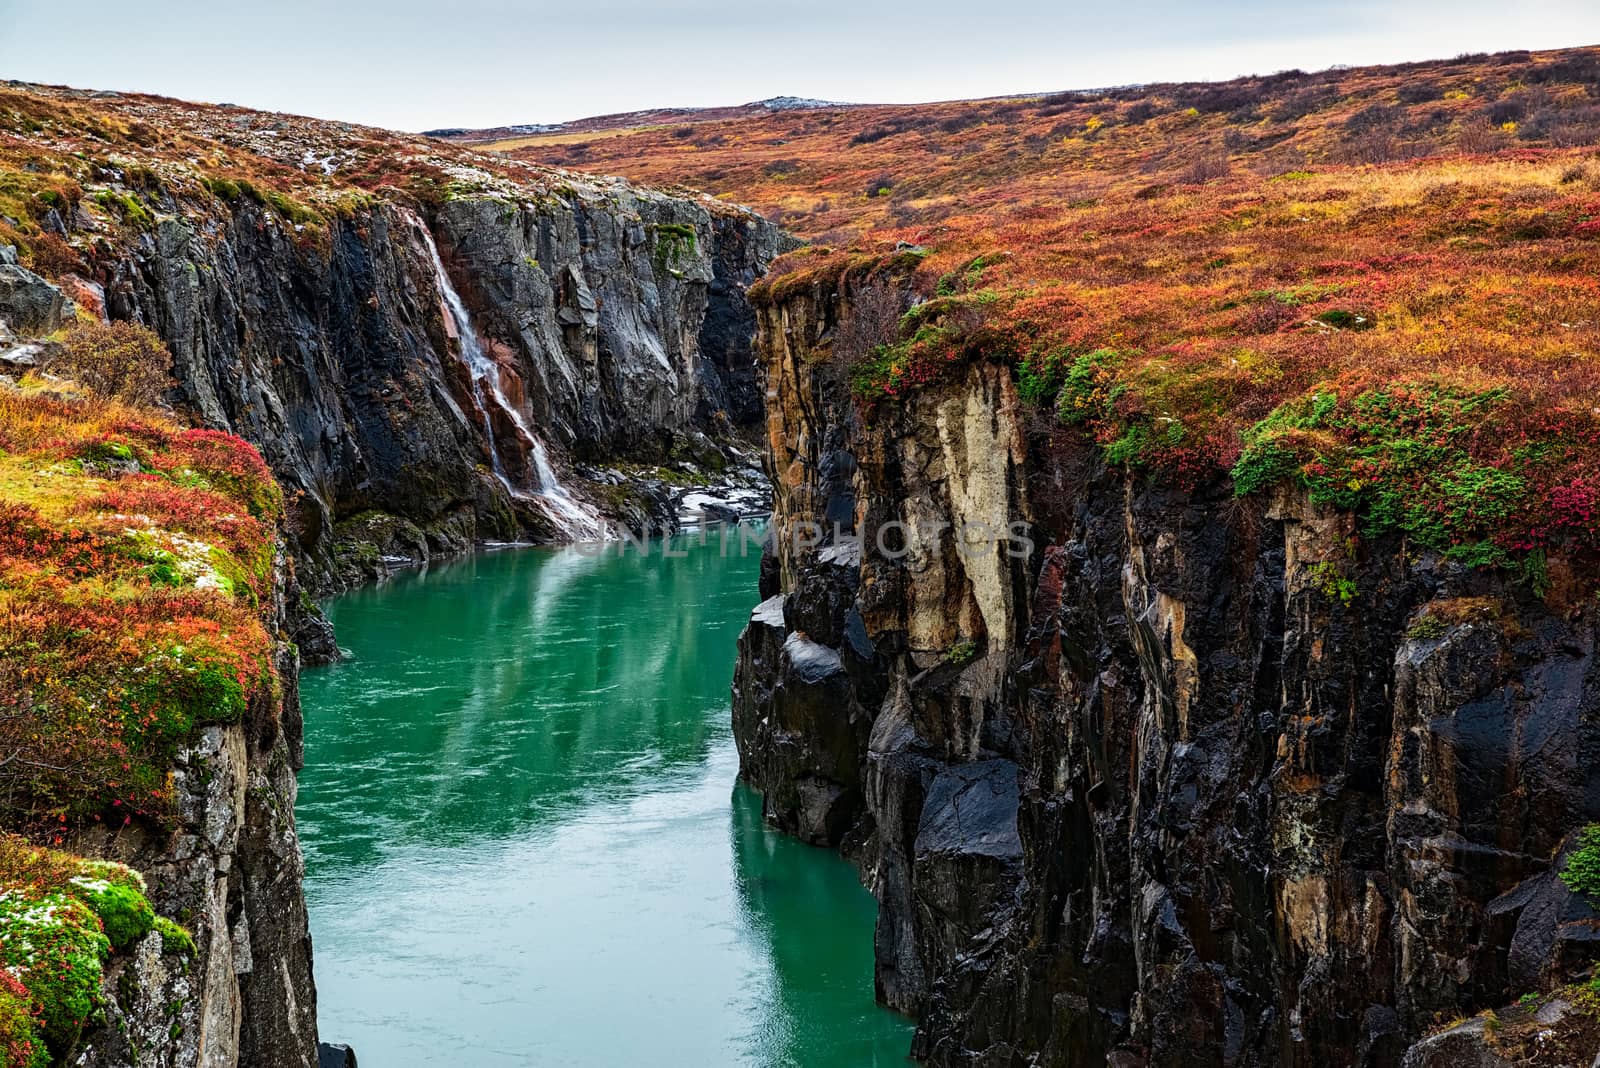 Jokulsa a Dal river canyon, Iceland by LuigiMorbidelli